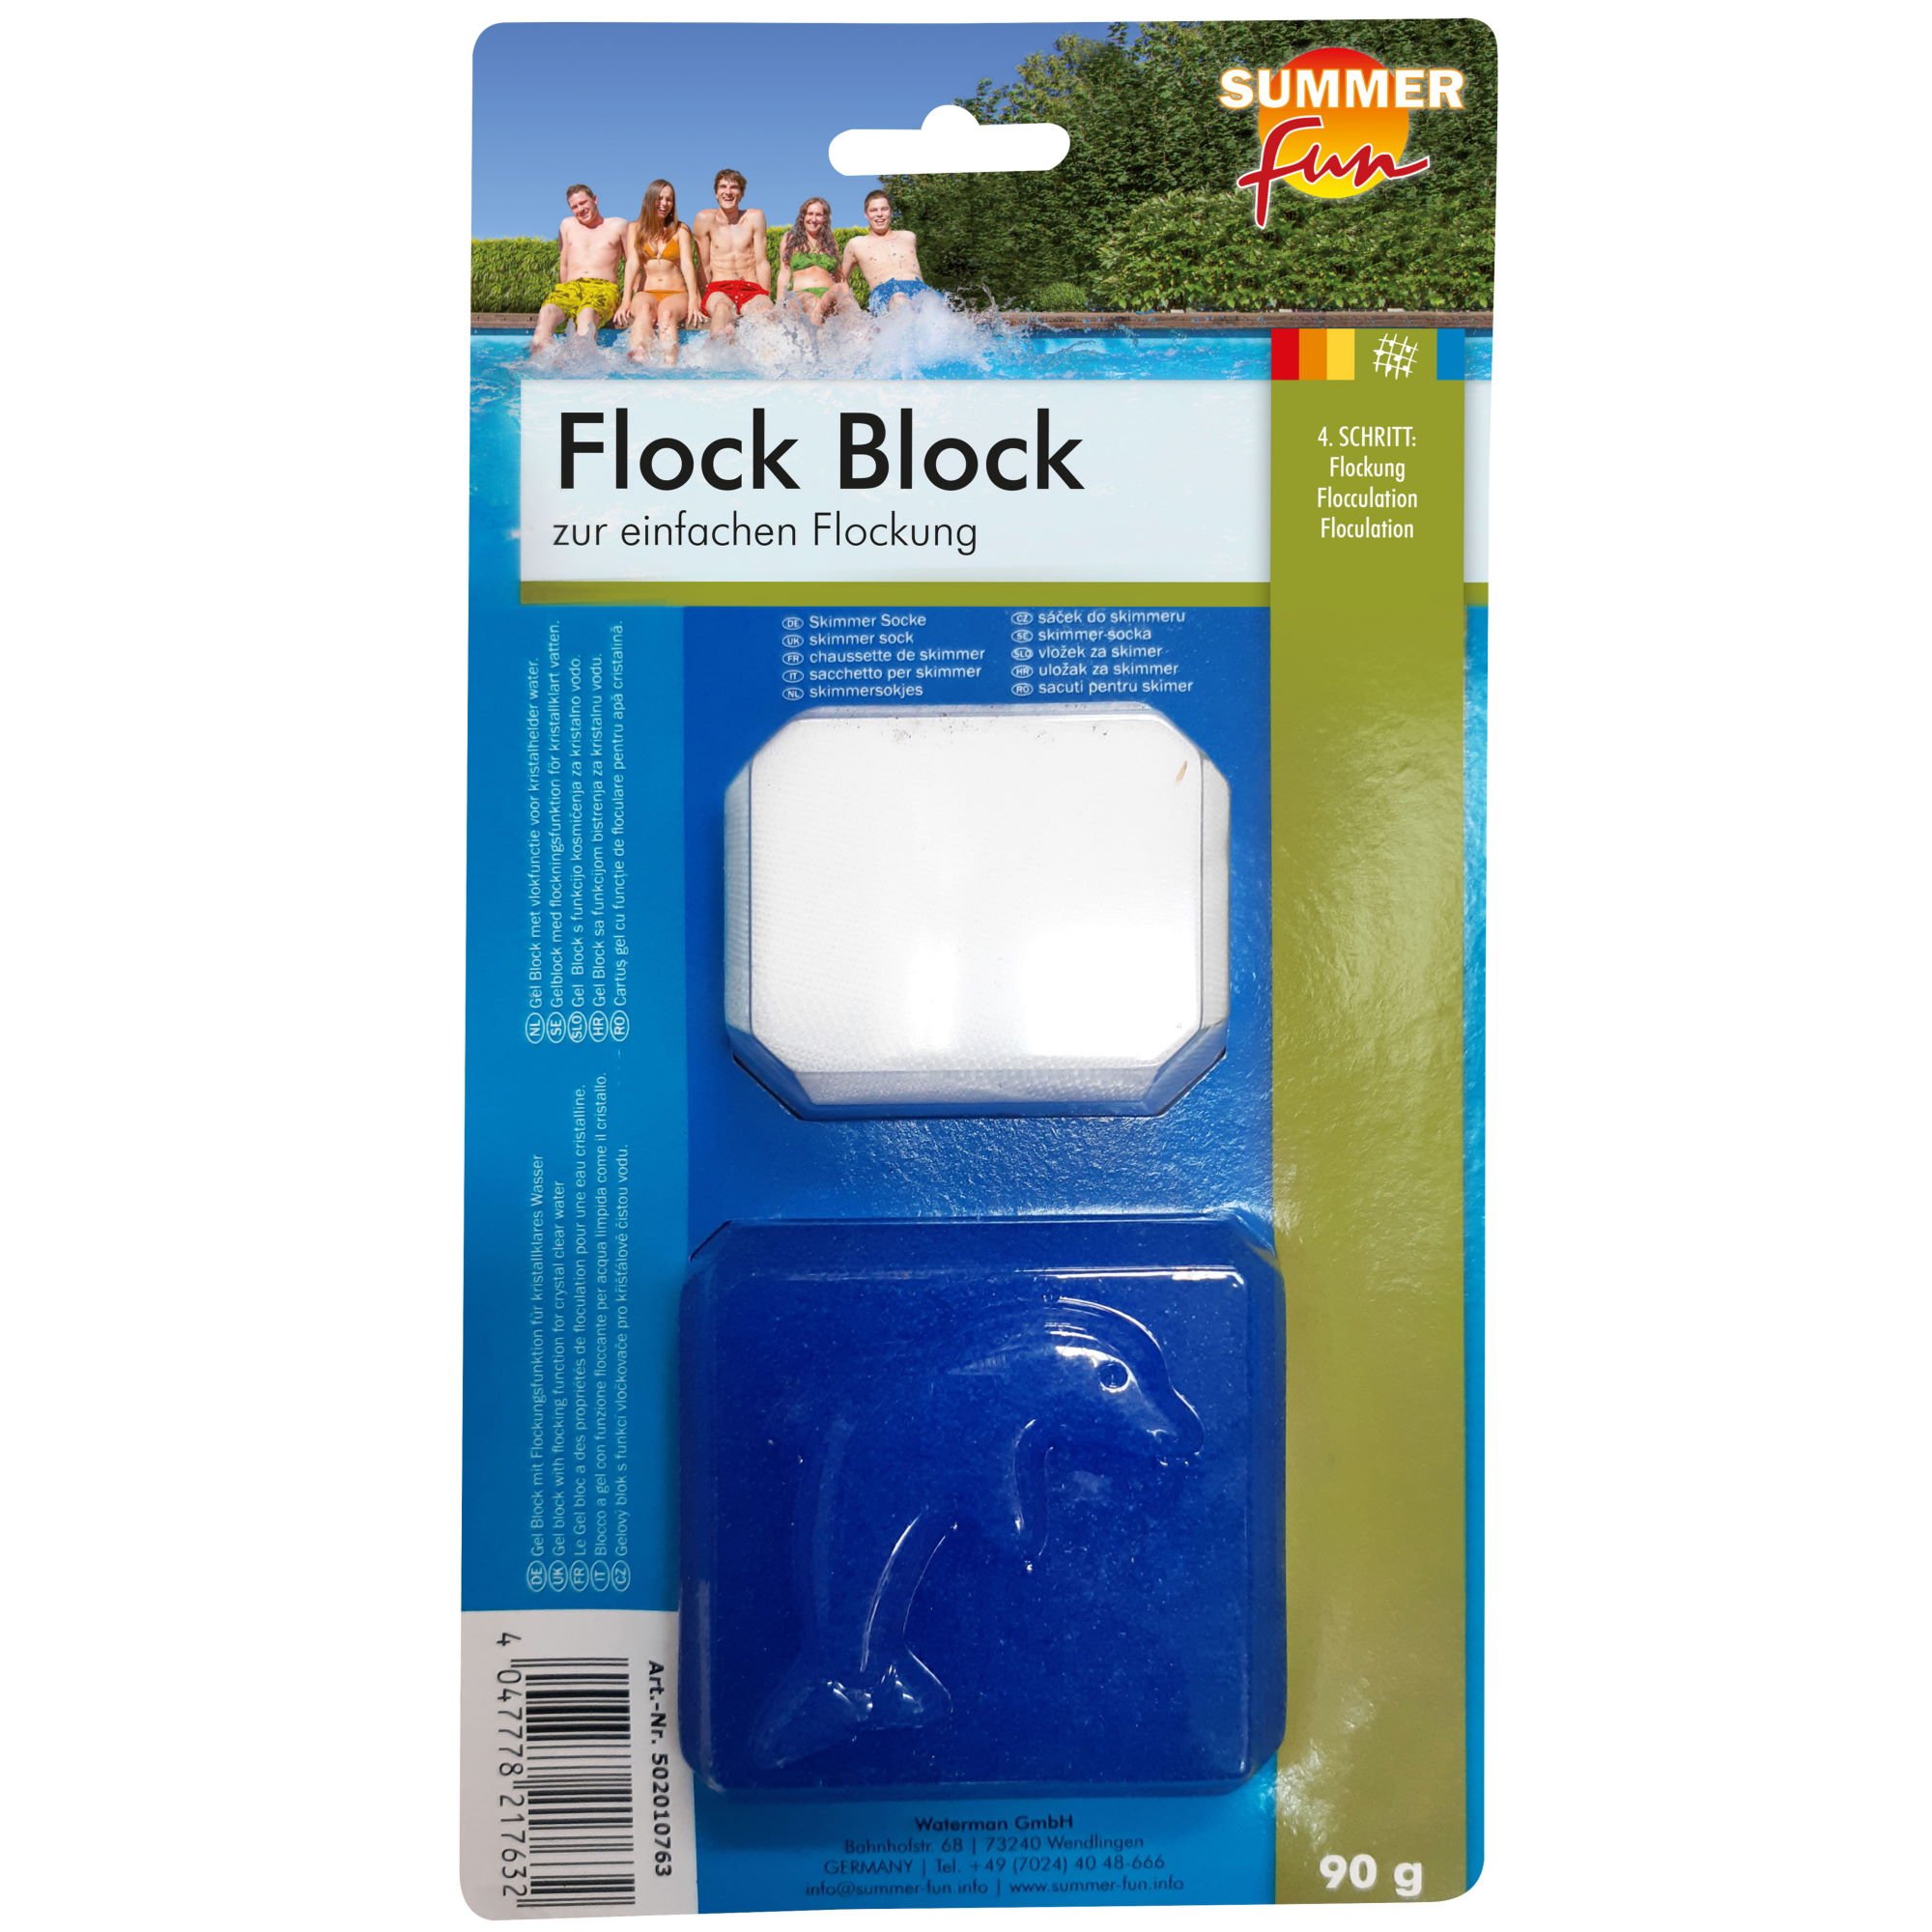 Summer Fun - Flock Block 90g, 0,09 kg